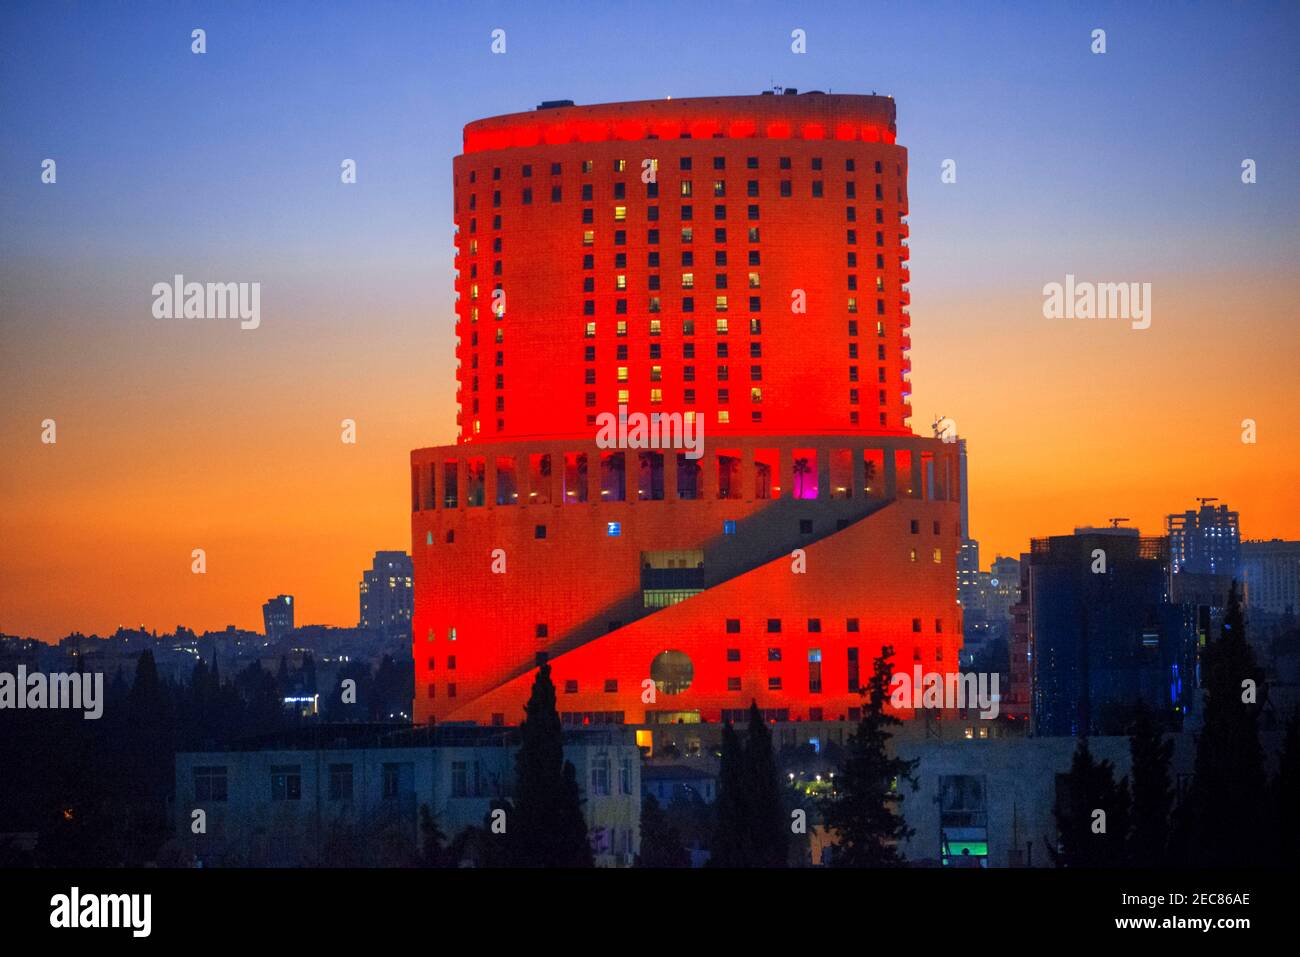 Vue de dessus immeubles d'appartements dans la ville d'Amman, capitale de la Jordanie. Vue avec le Royal Hotel, Amman Jordanie. Banque D'Images